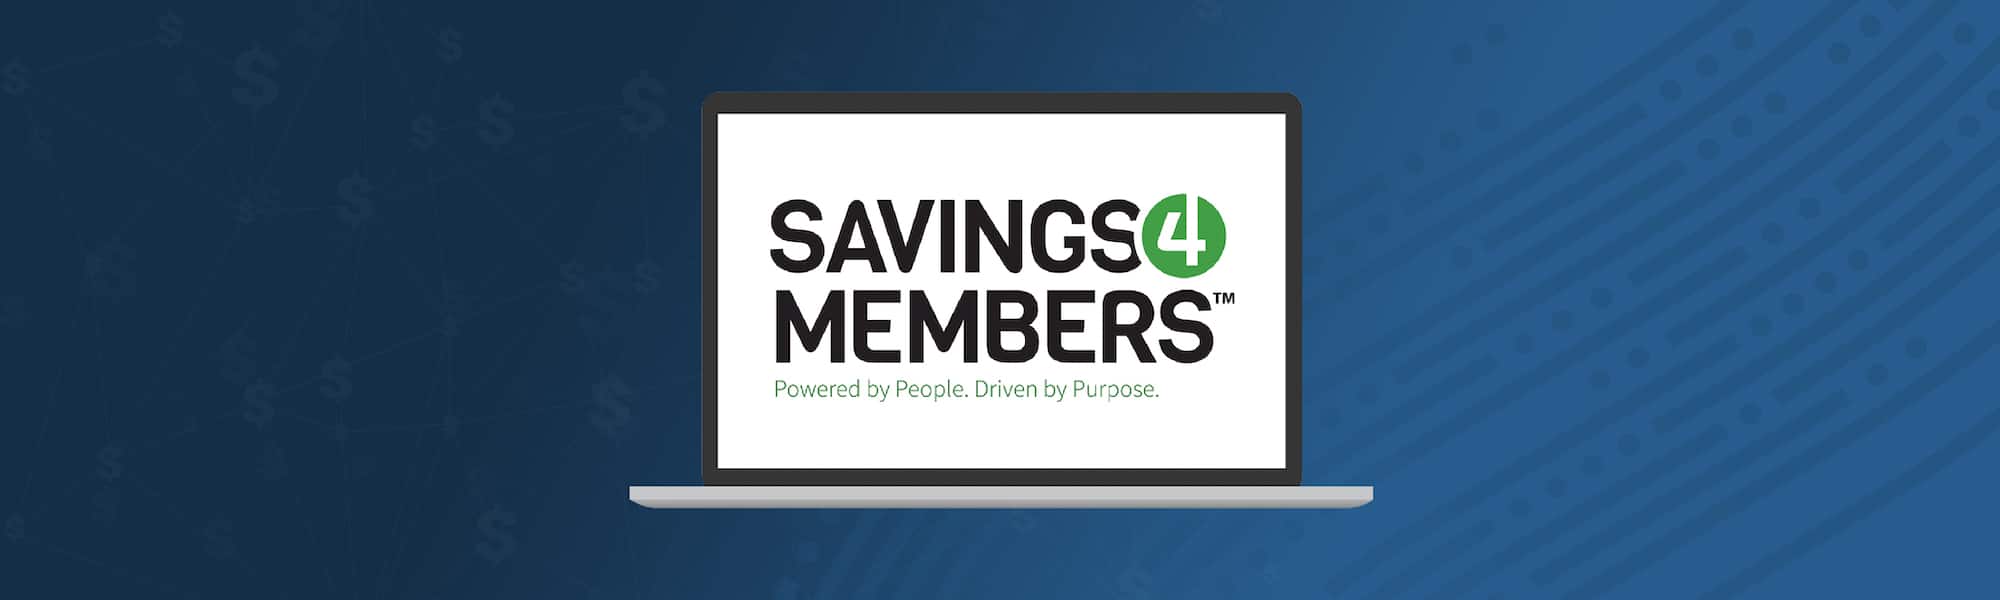 Savings4Members-Partnership_2000x600